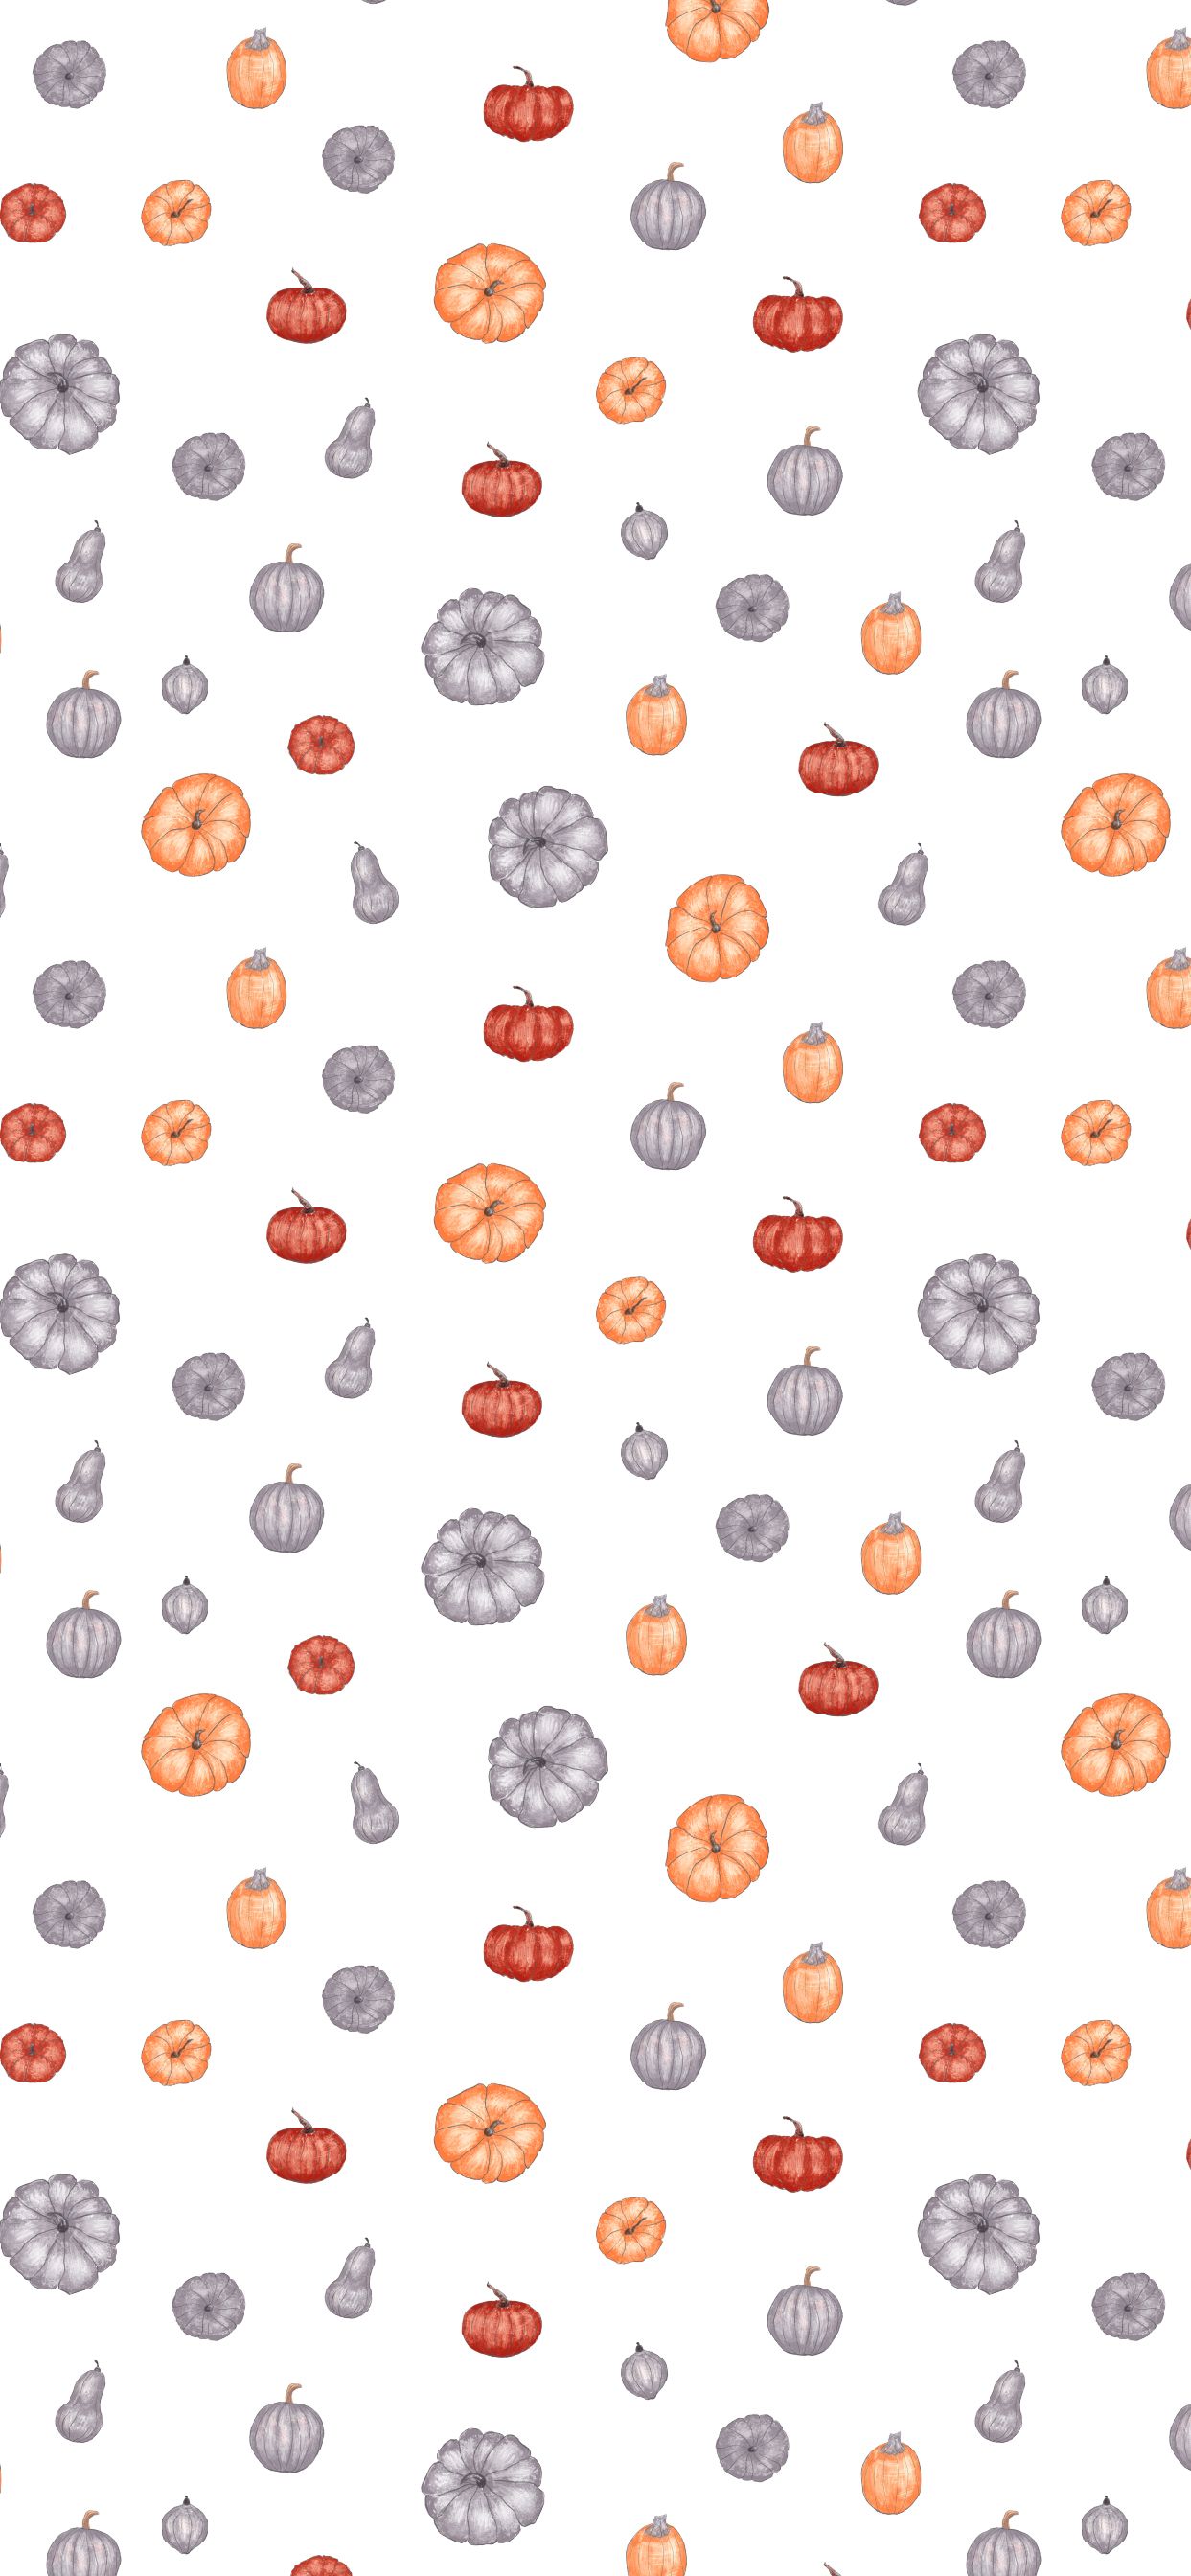 Fall Pumpkin Wallpaper for iPhone. Pumpkin wallpaper, Fall background iphone, iPhone wallpaper fall